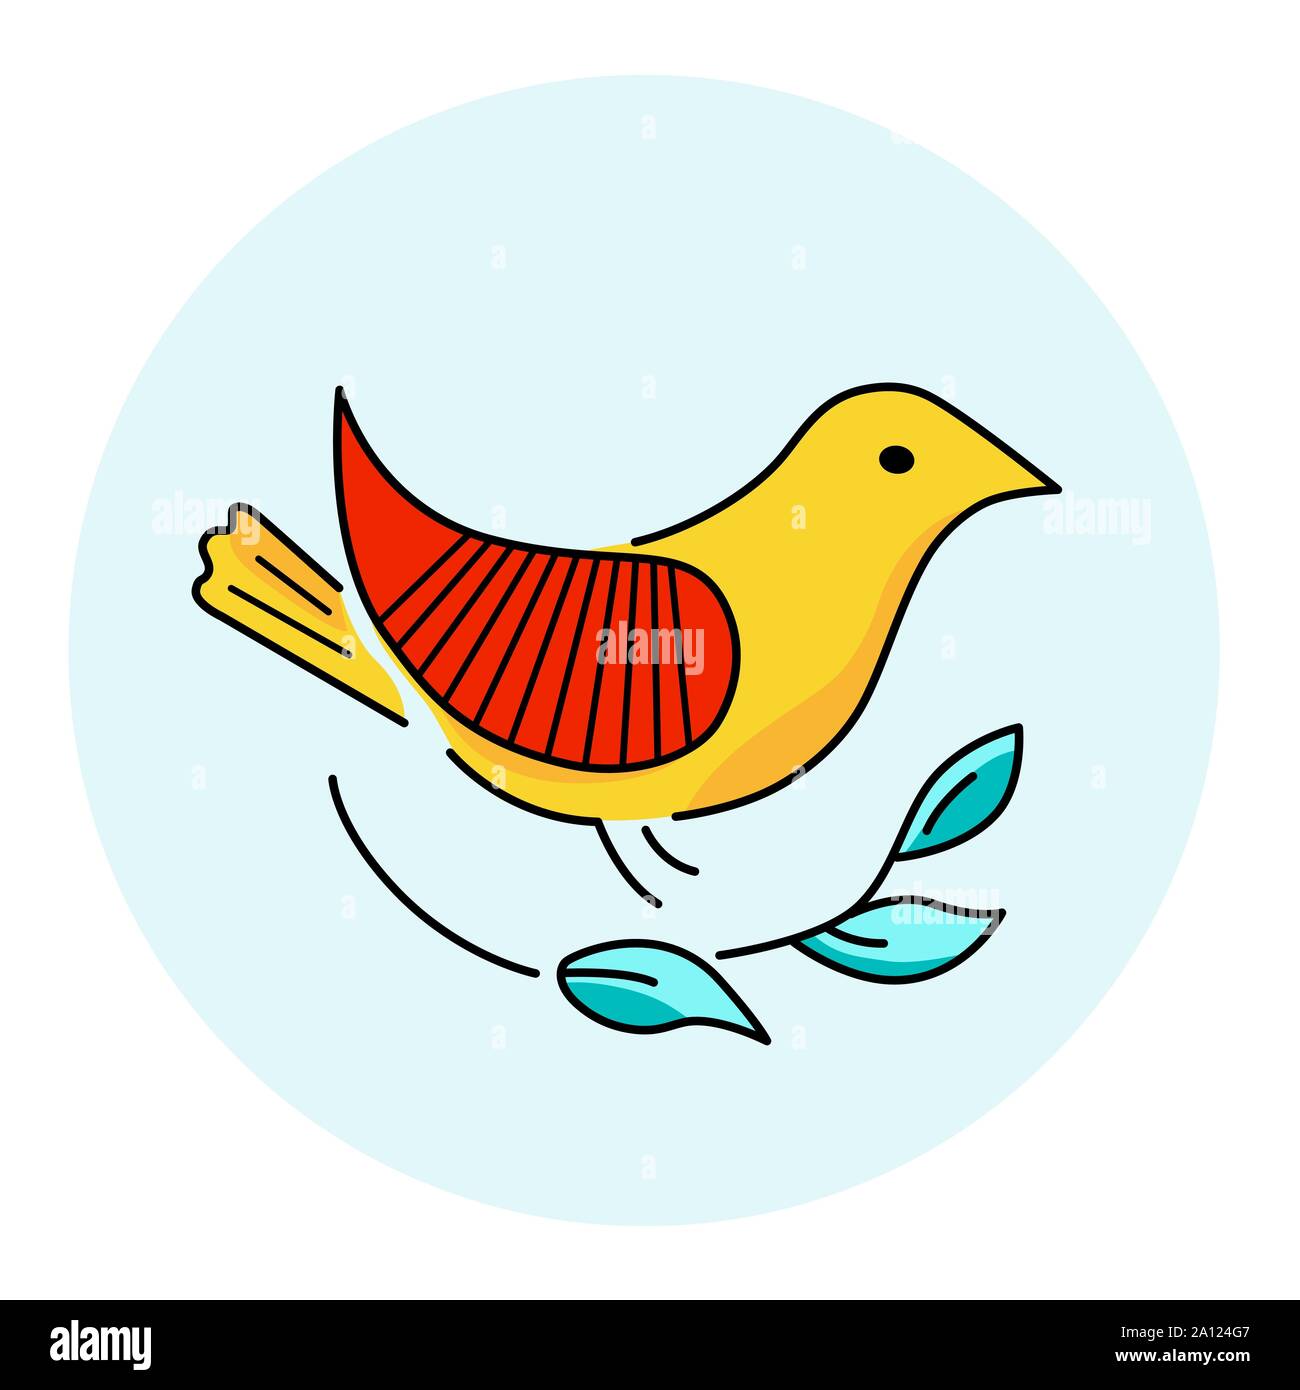 Vector illustration couleur d'un oiseau, le logo, les dessins au trait en motif de broderie de style folklorique pour l'ornement Illustration de Vecteur